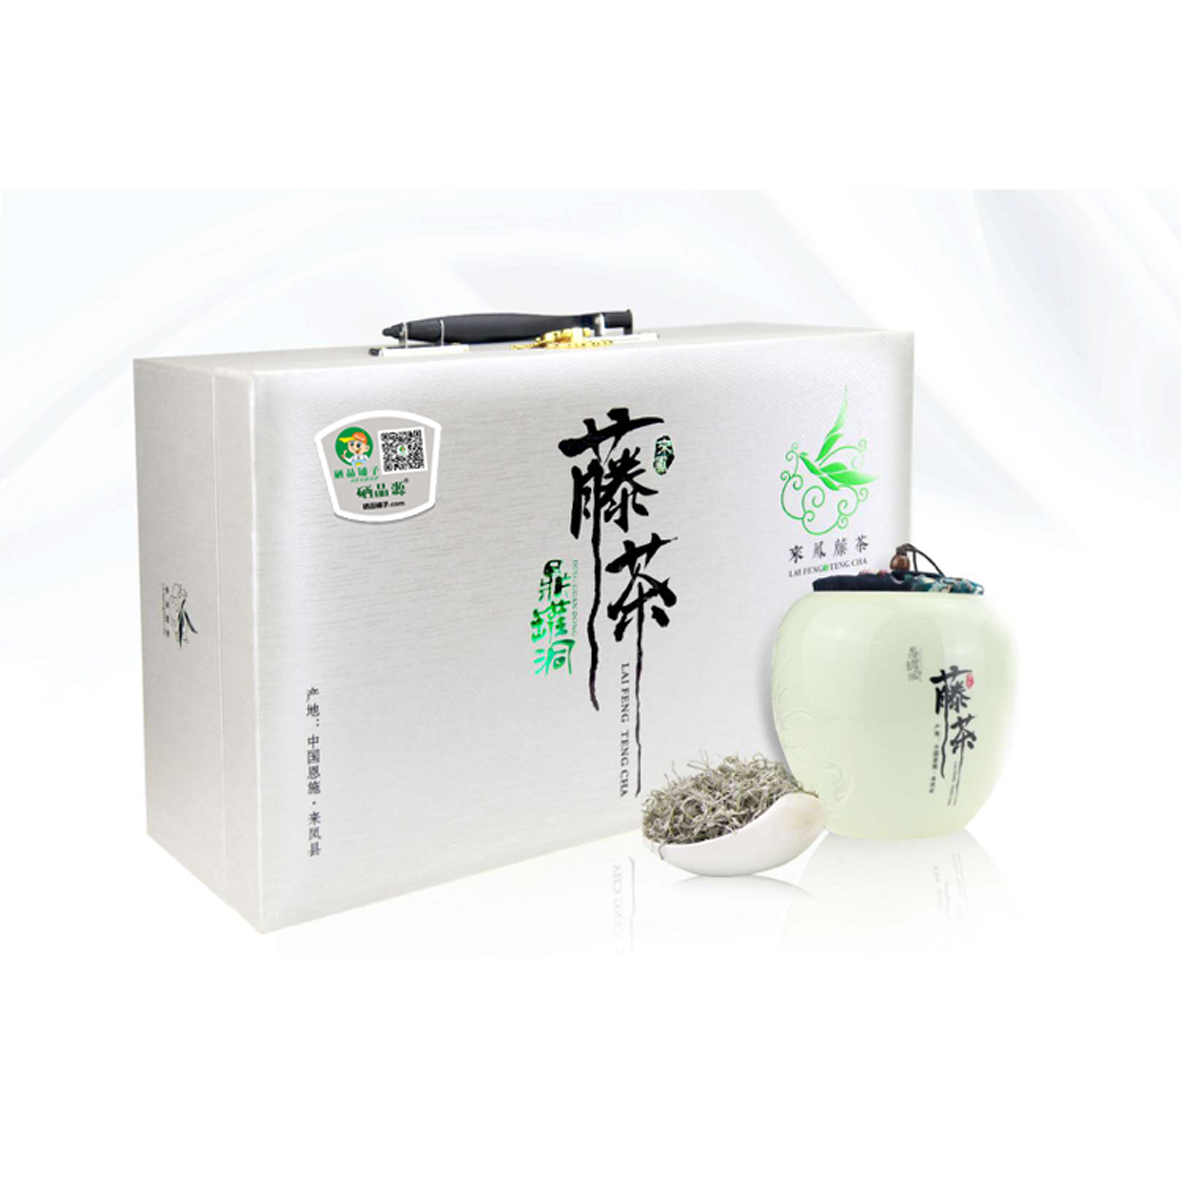 【恩施藤茶】特级龙须·礼盒(150g) 